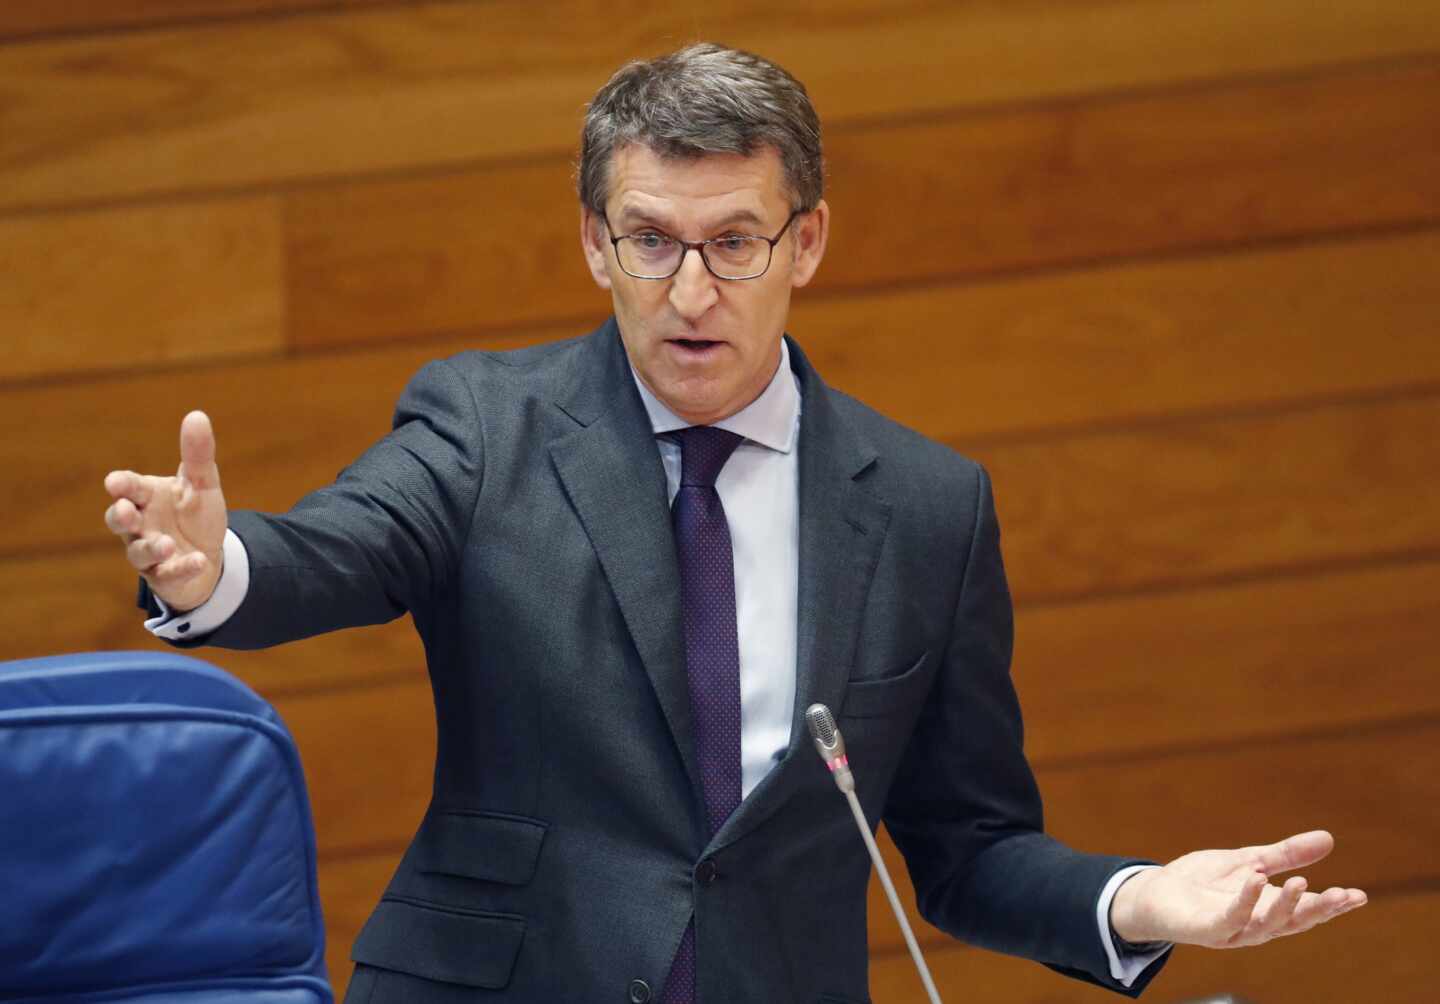 Feijóo reitera a Arrimadas el 'no' a la coalición: "Sumar no siempre interesa"